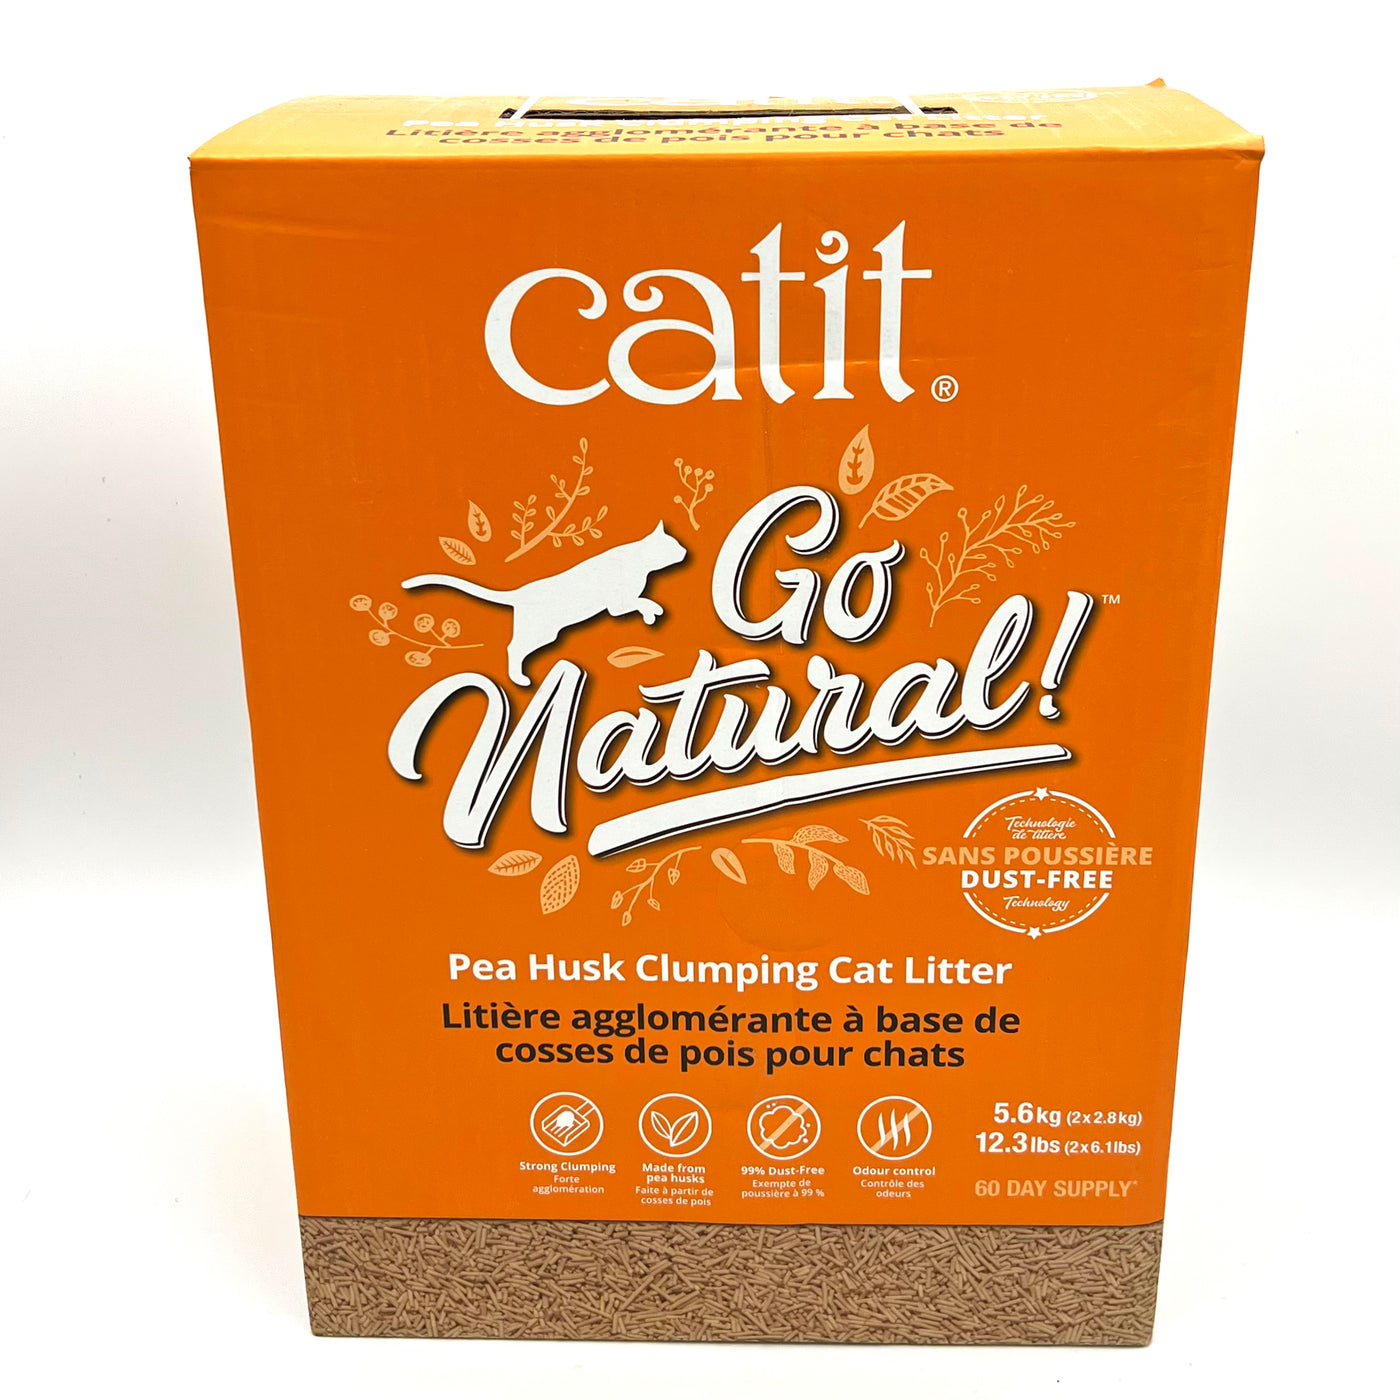 Catit Go Natural Pea Husk Clumping Cat Litter 12.3lb